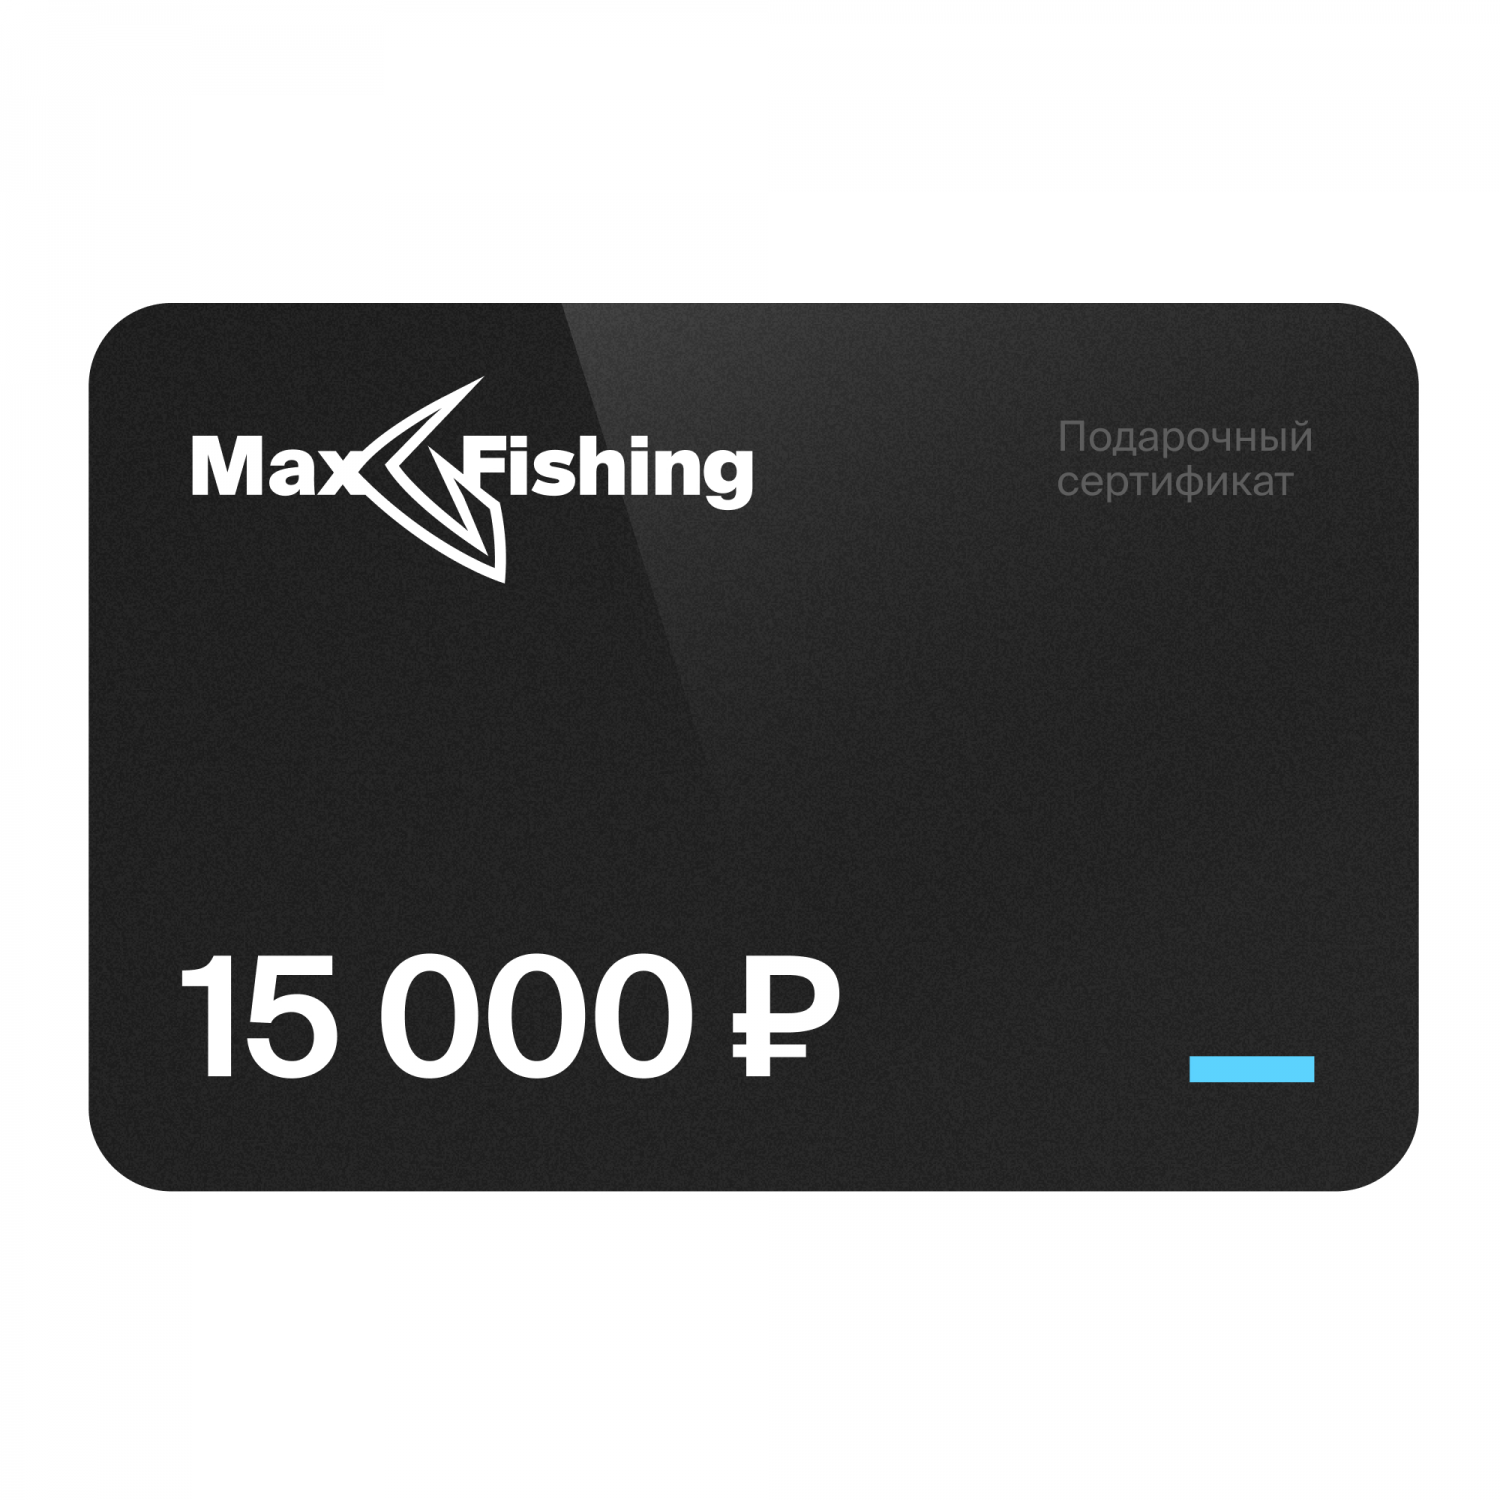 Подарочный сертификат MaxFishing 15 000 ₽